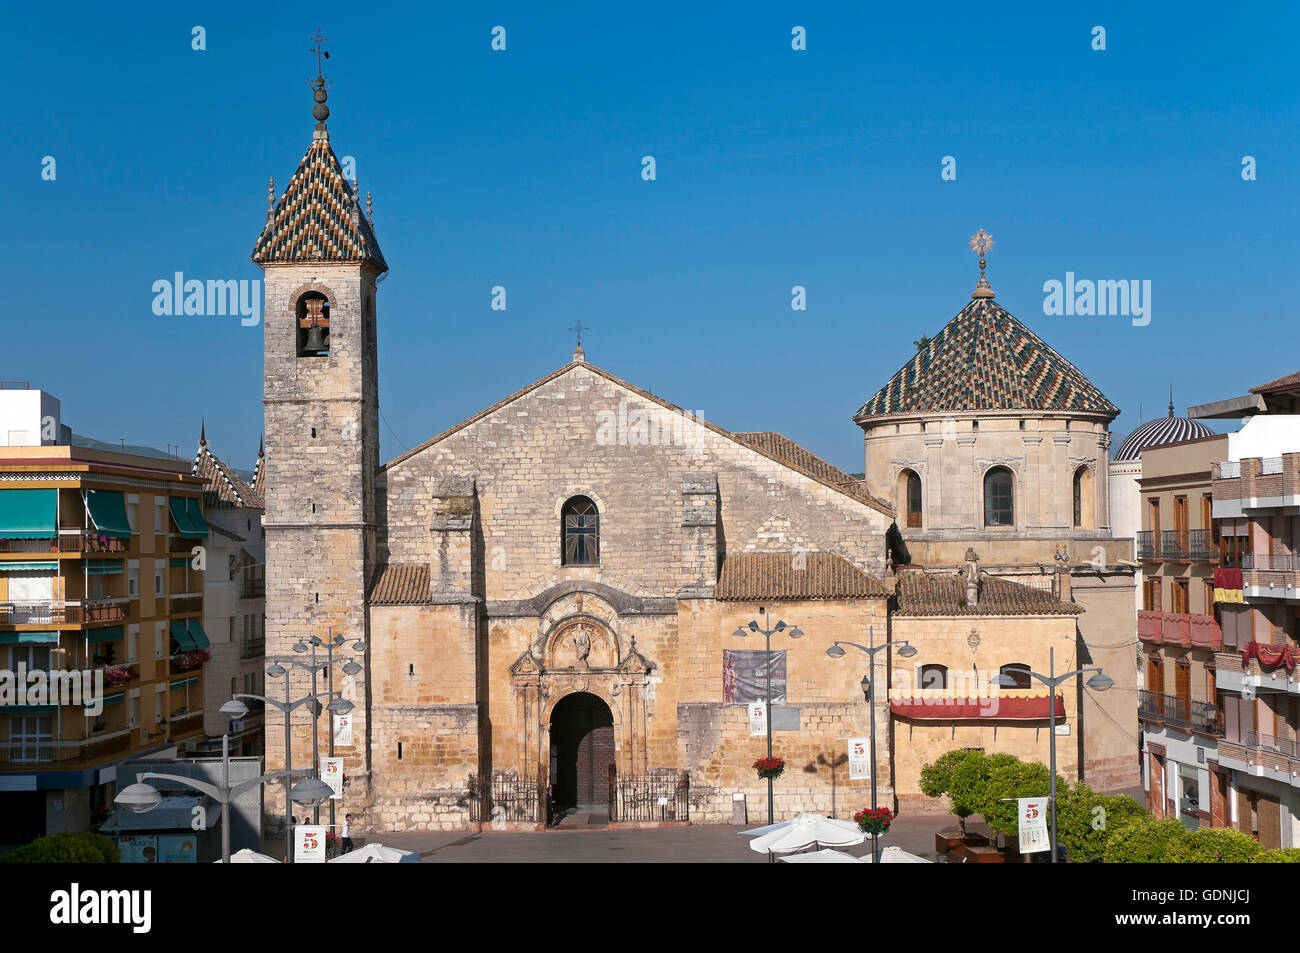 Église paroissiale de San Mateo - 16e siècle, Lucena, Cordoba province, région d'Andalousie, Espagne, Europe Banque D'Images